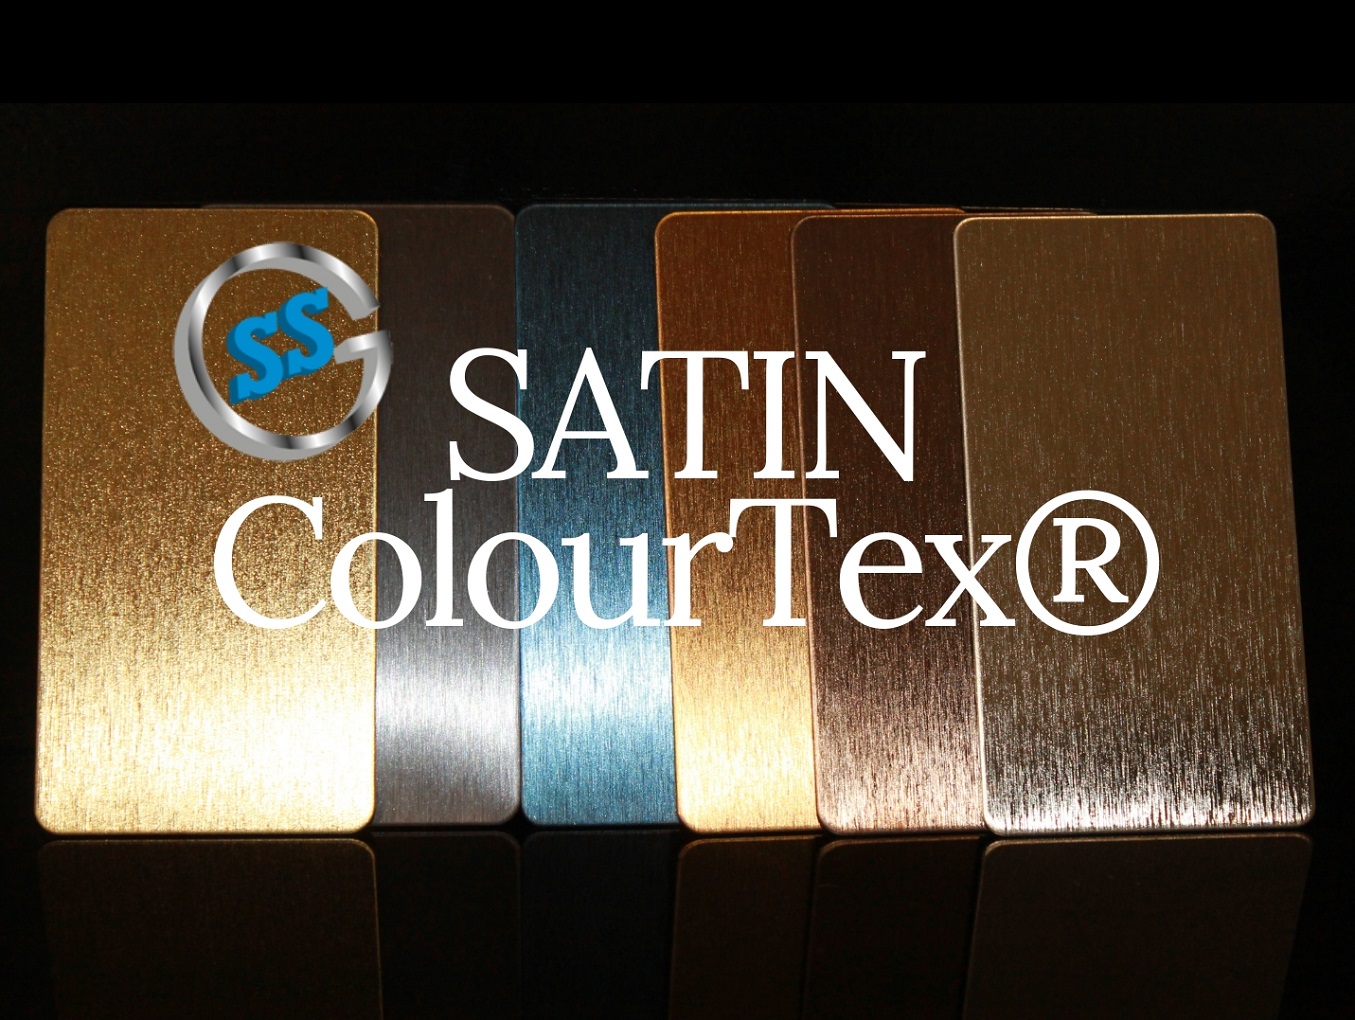 Varianti elettro-colorate ColourTex Satin, inox satinato colorato galvanico, inox elettro-colorato satin